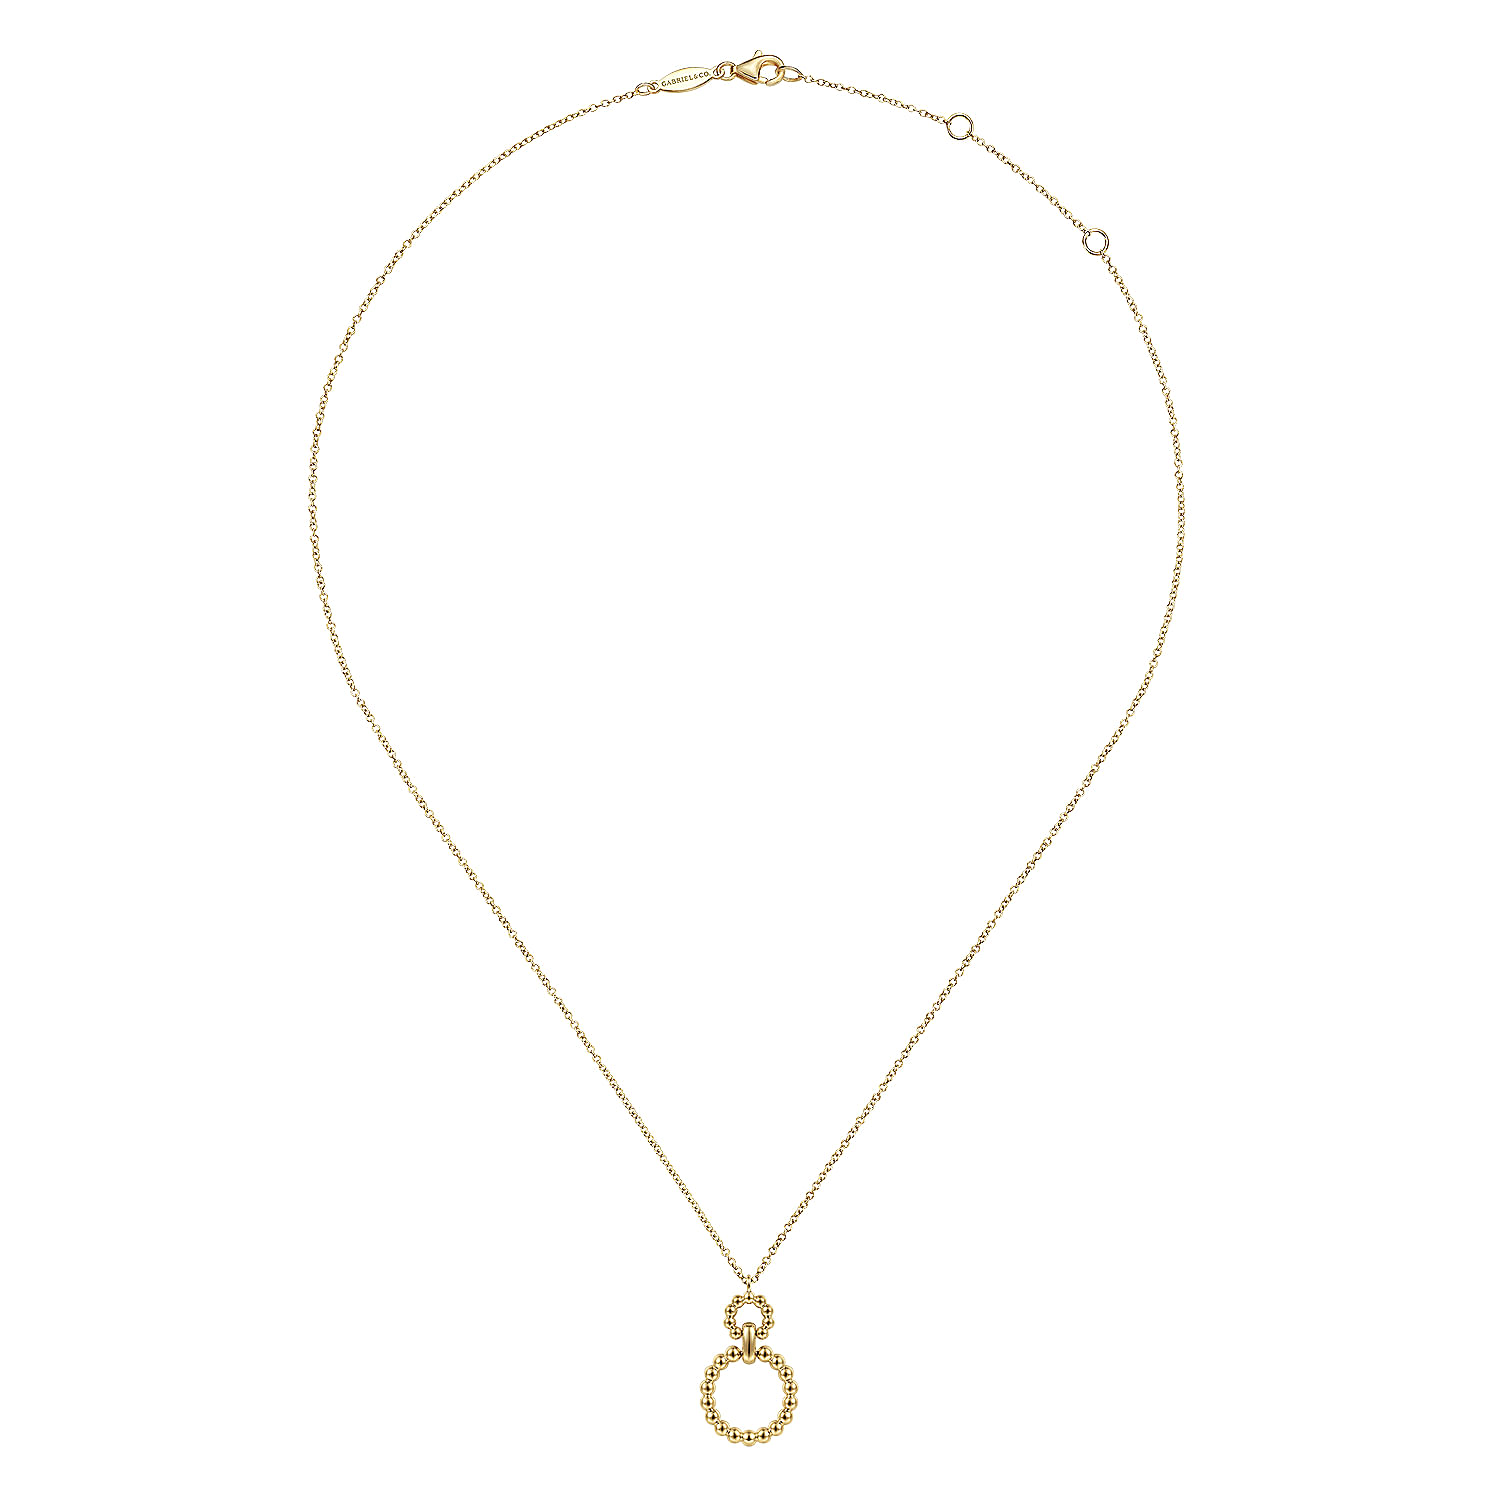 14K Yellow Gold  Pendant Necklace with Bujukan Bead Circles